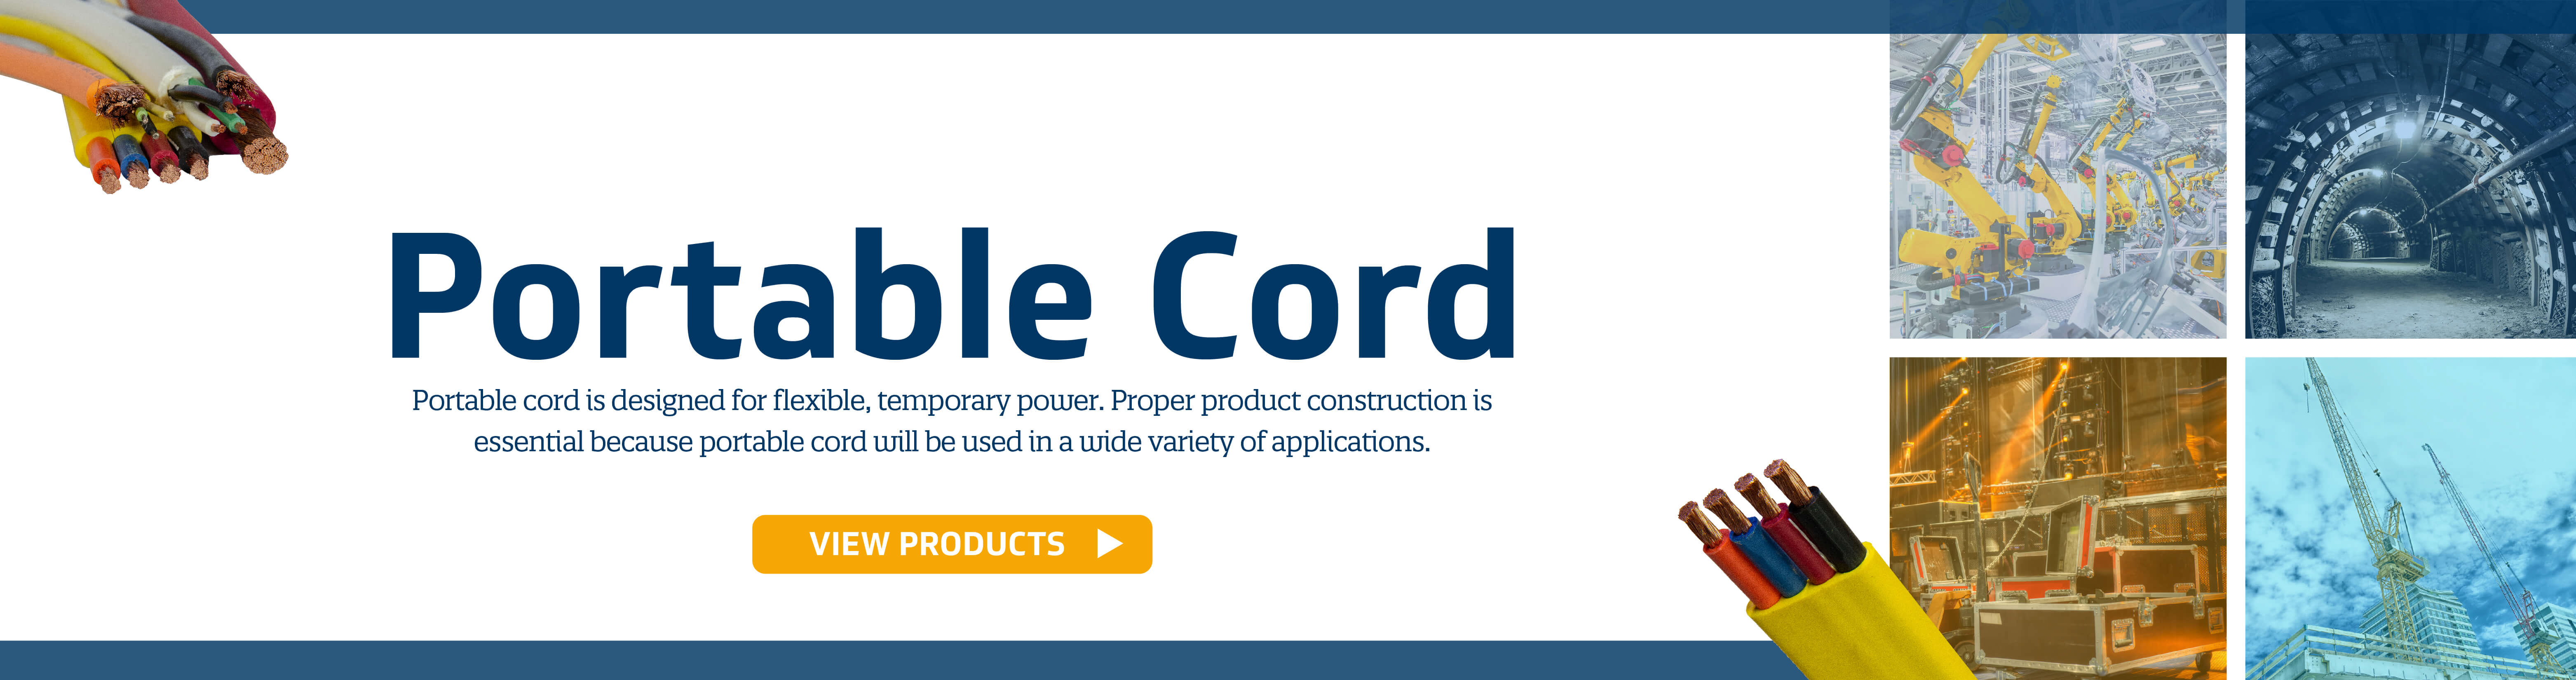 Portable Cord